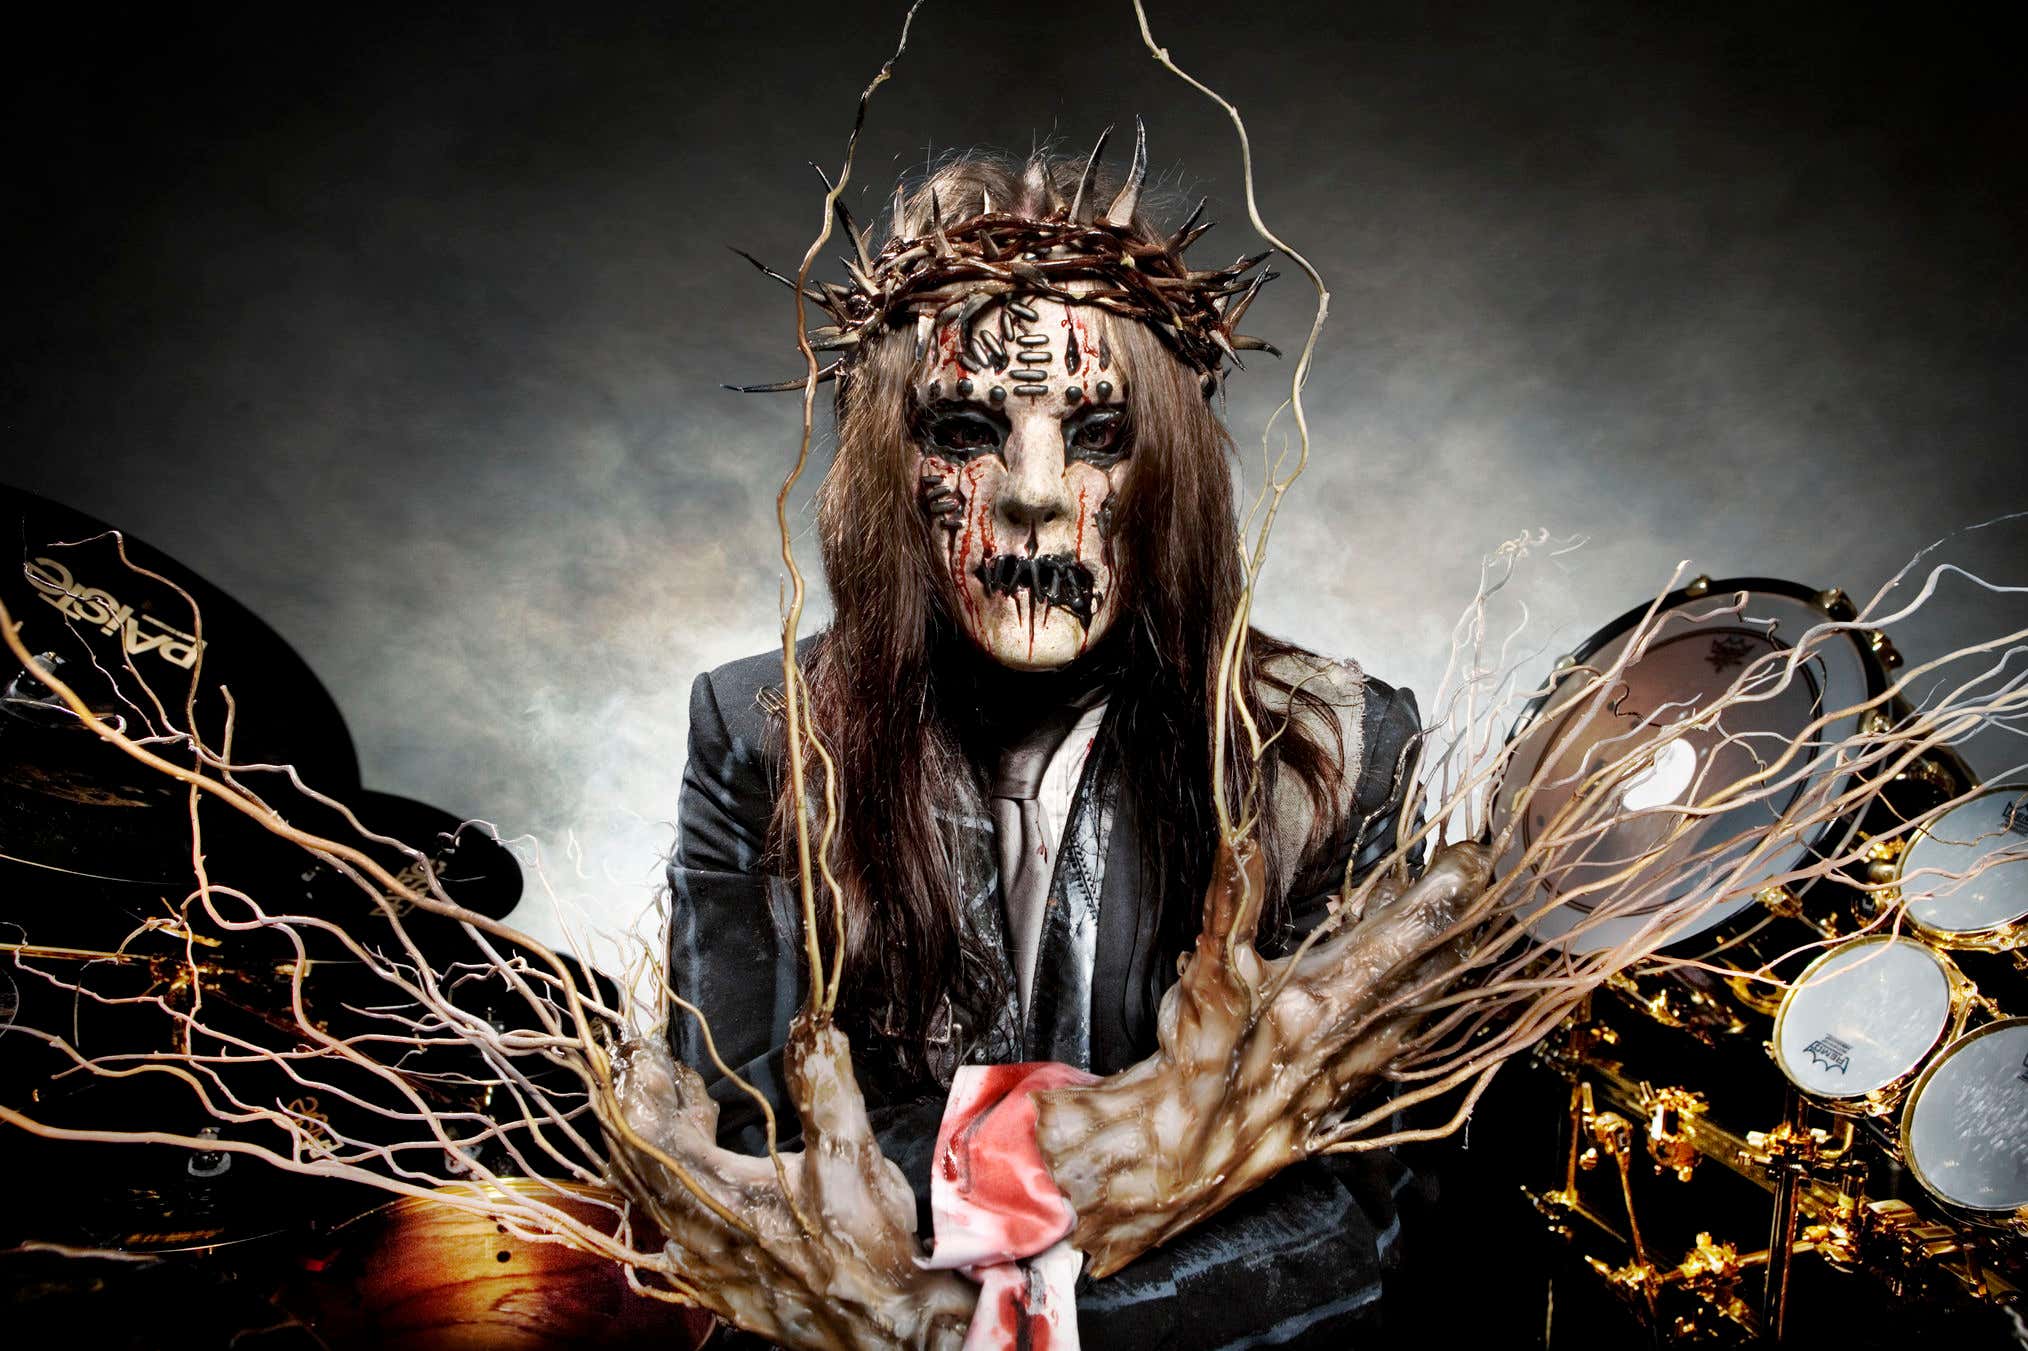 RIP To Slipknot Founding Member Joey Jordison